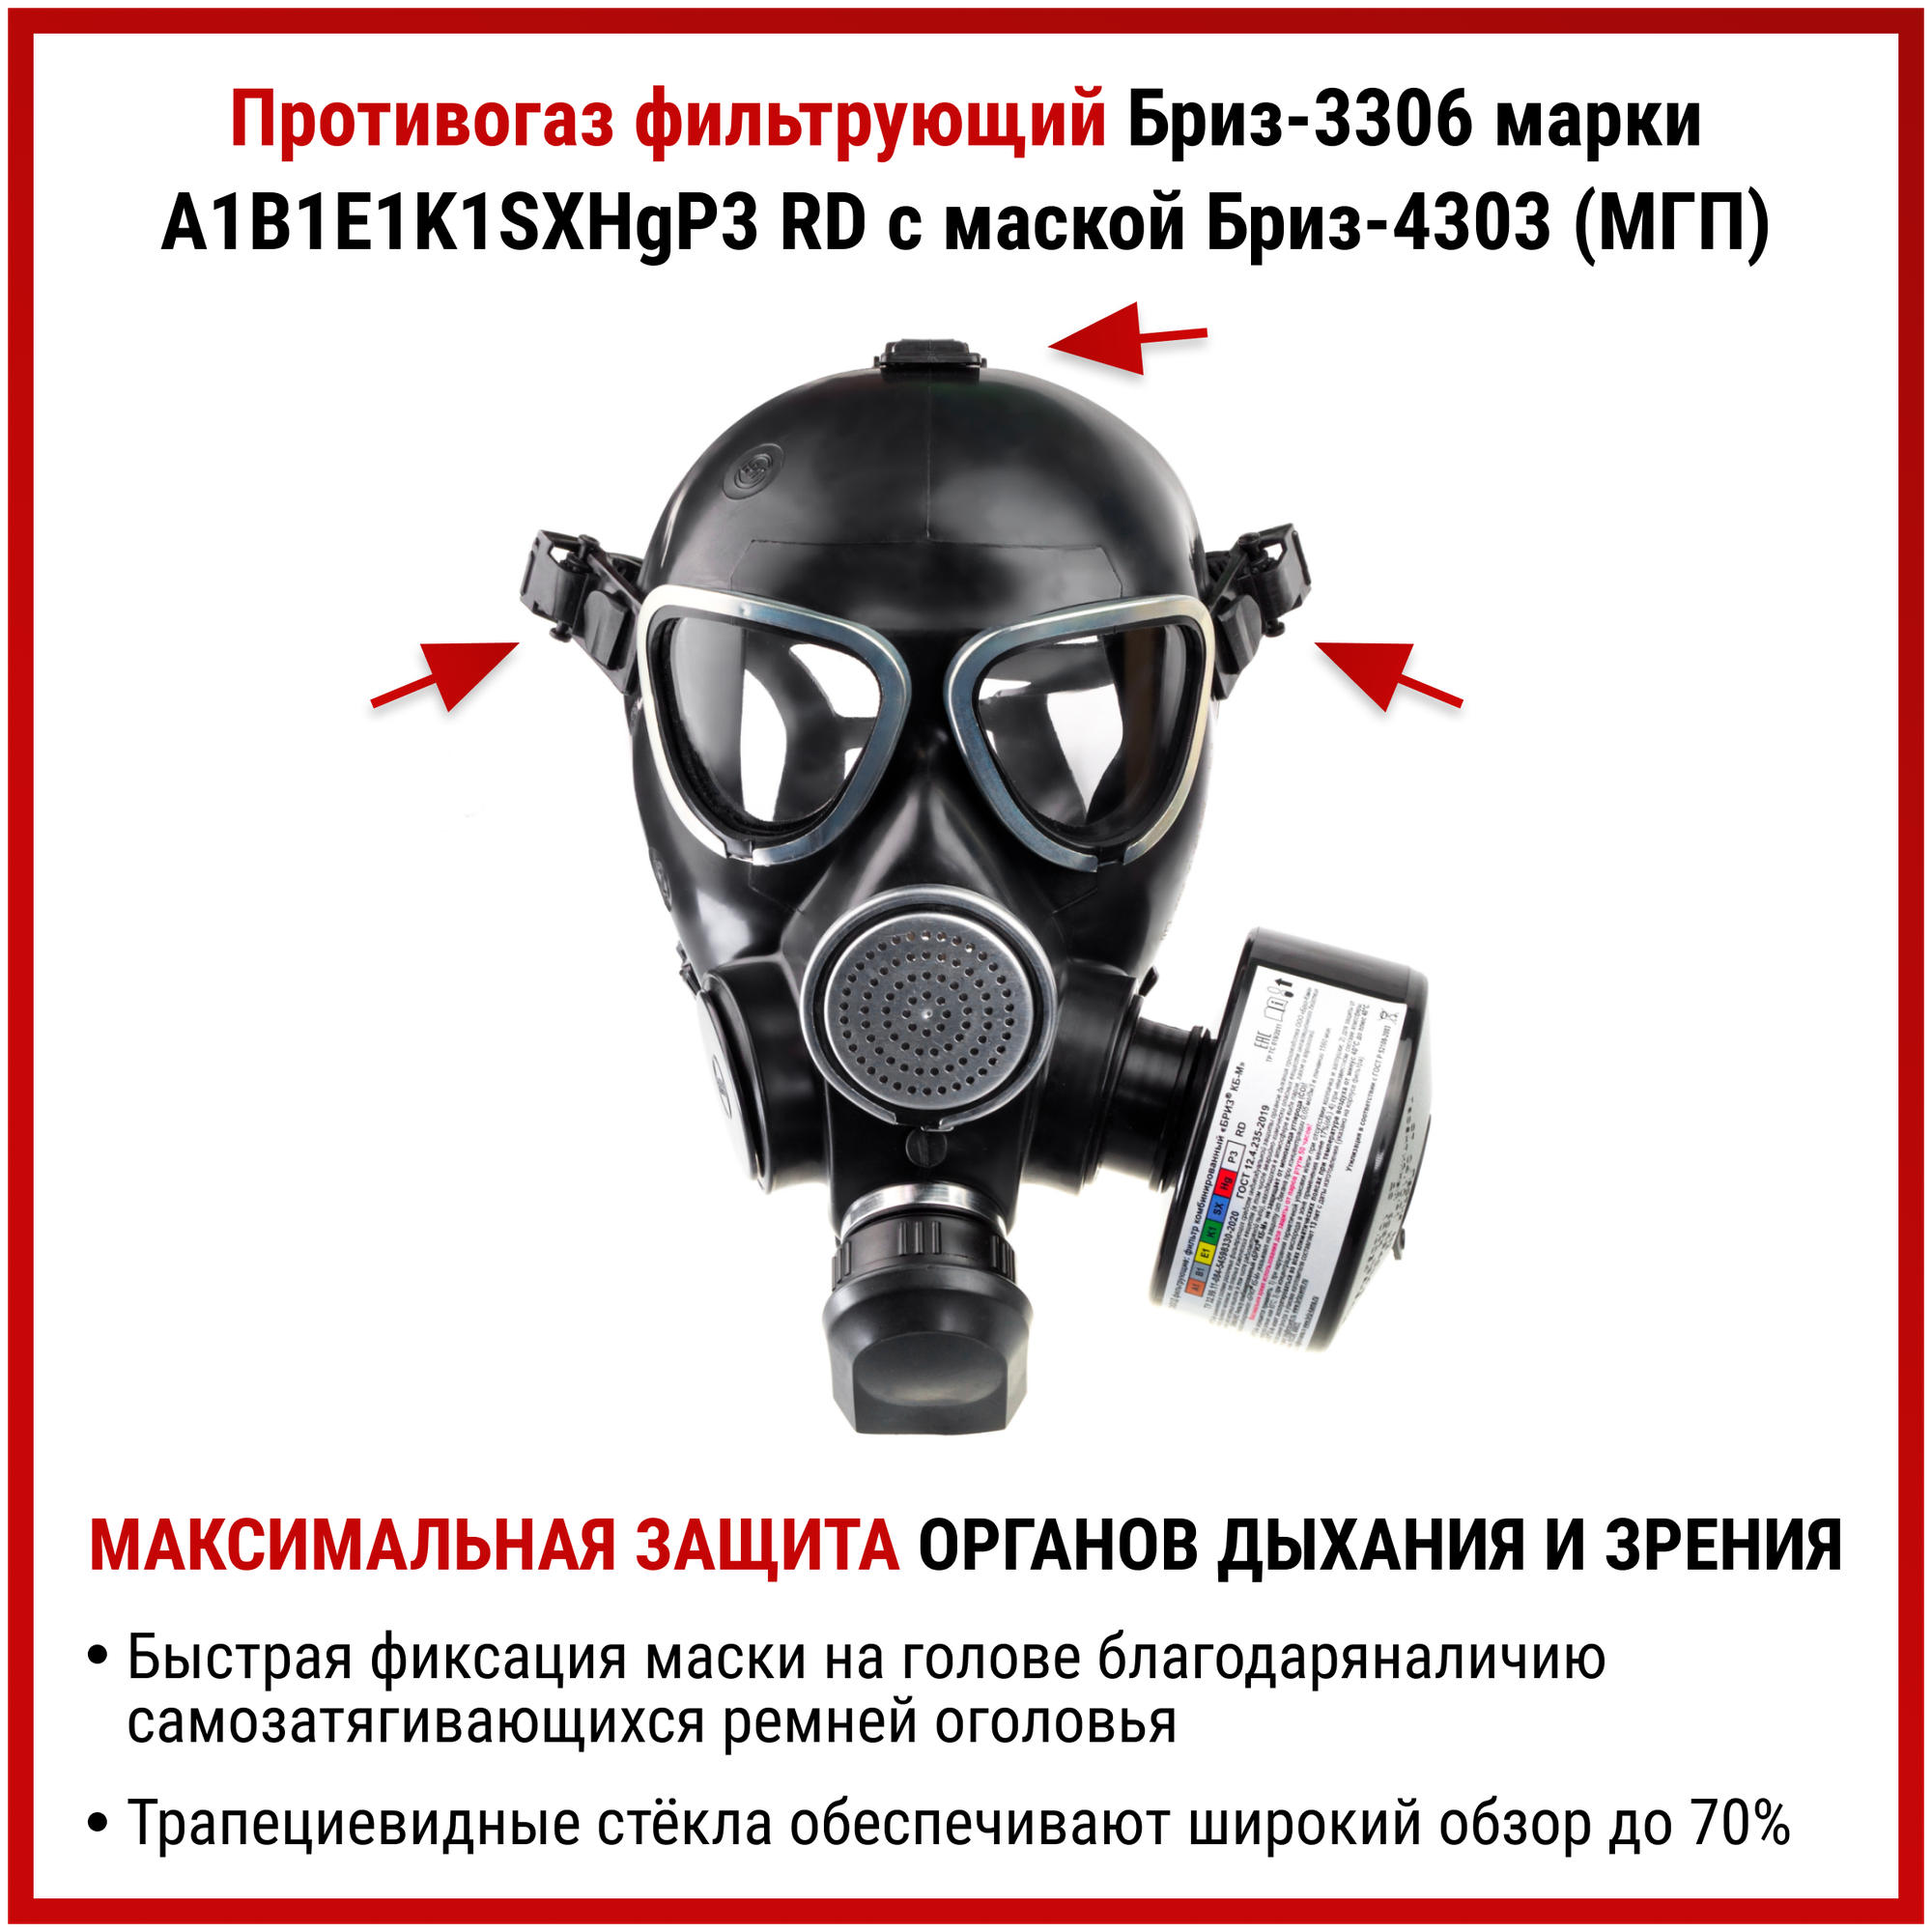 Противогаз Бриз-3306 (МГП) аналог ГП 7 Б маска защитная многоразовая с фильтром респиратор от пыли краски хлора радиоактивных веществ ffp3, размер L - фотография № 3